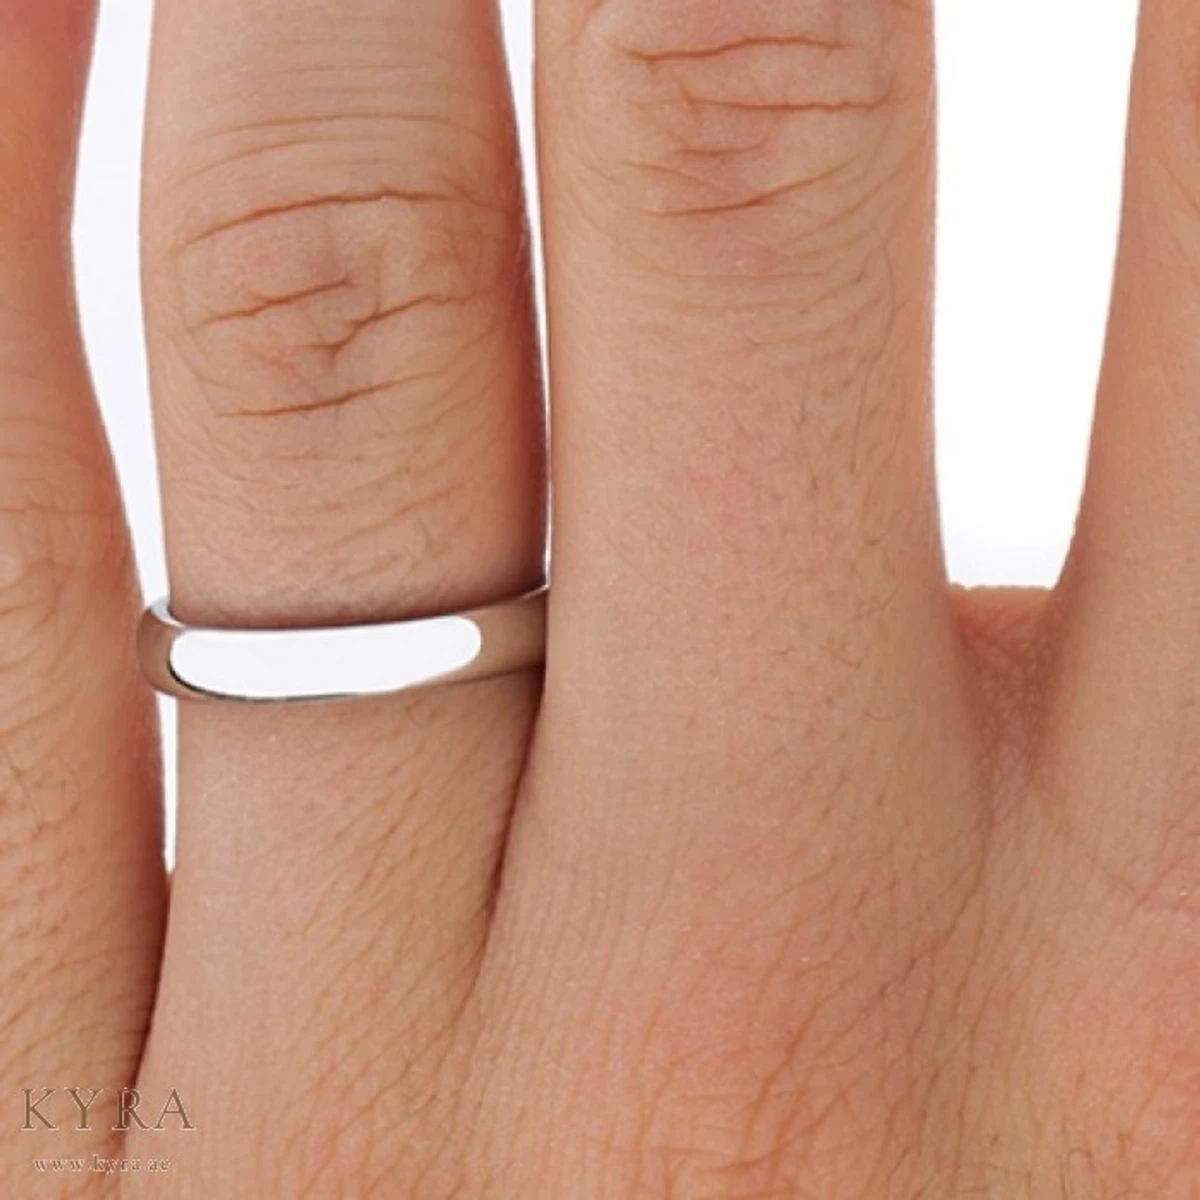 Lifestyle Stainless Steel Finger Ring For Men